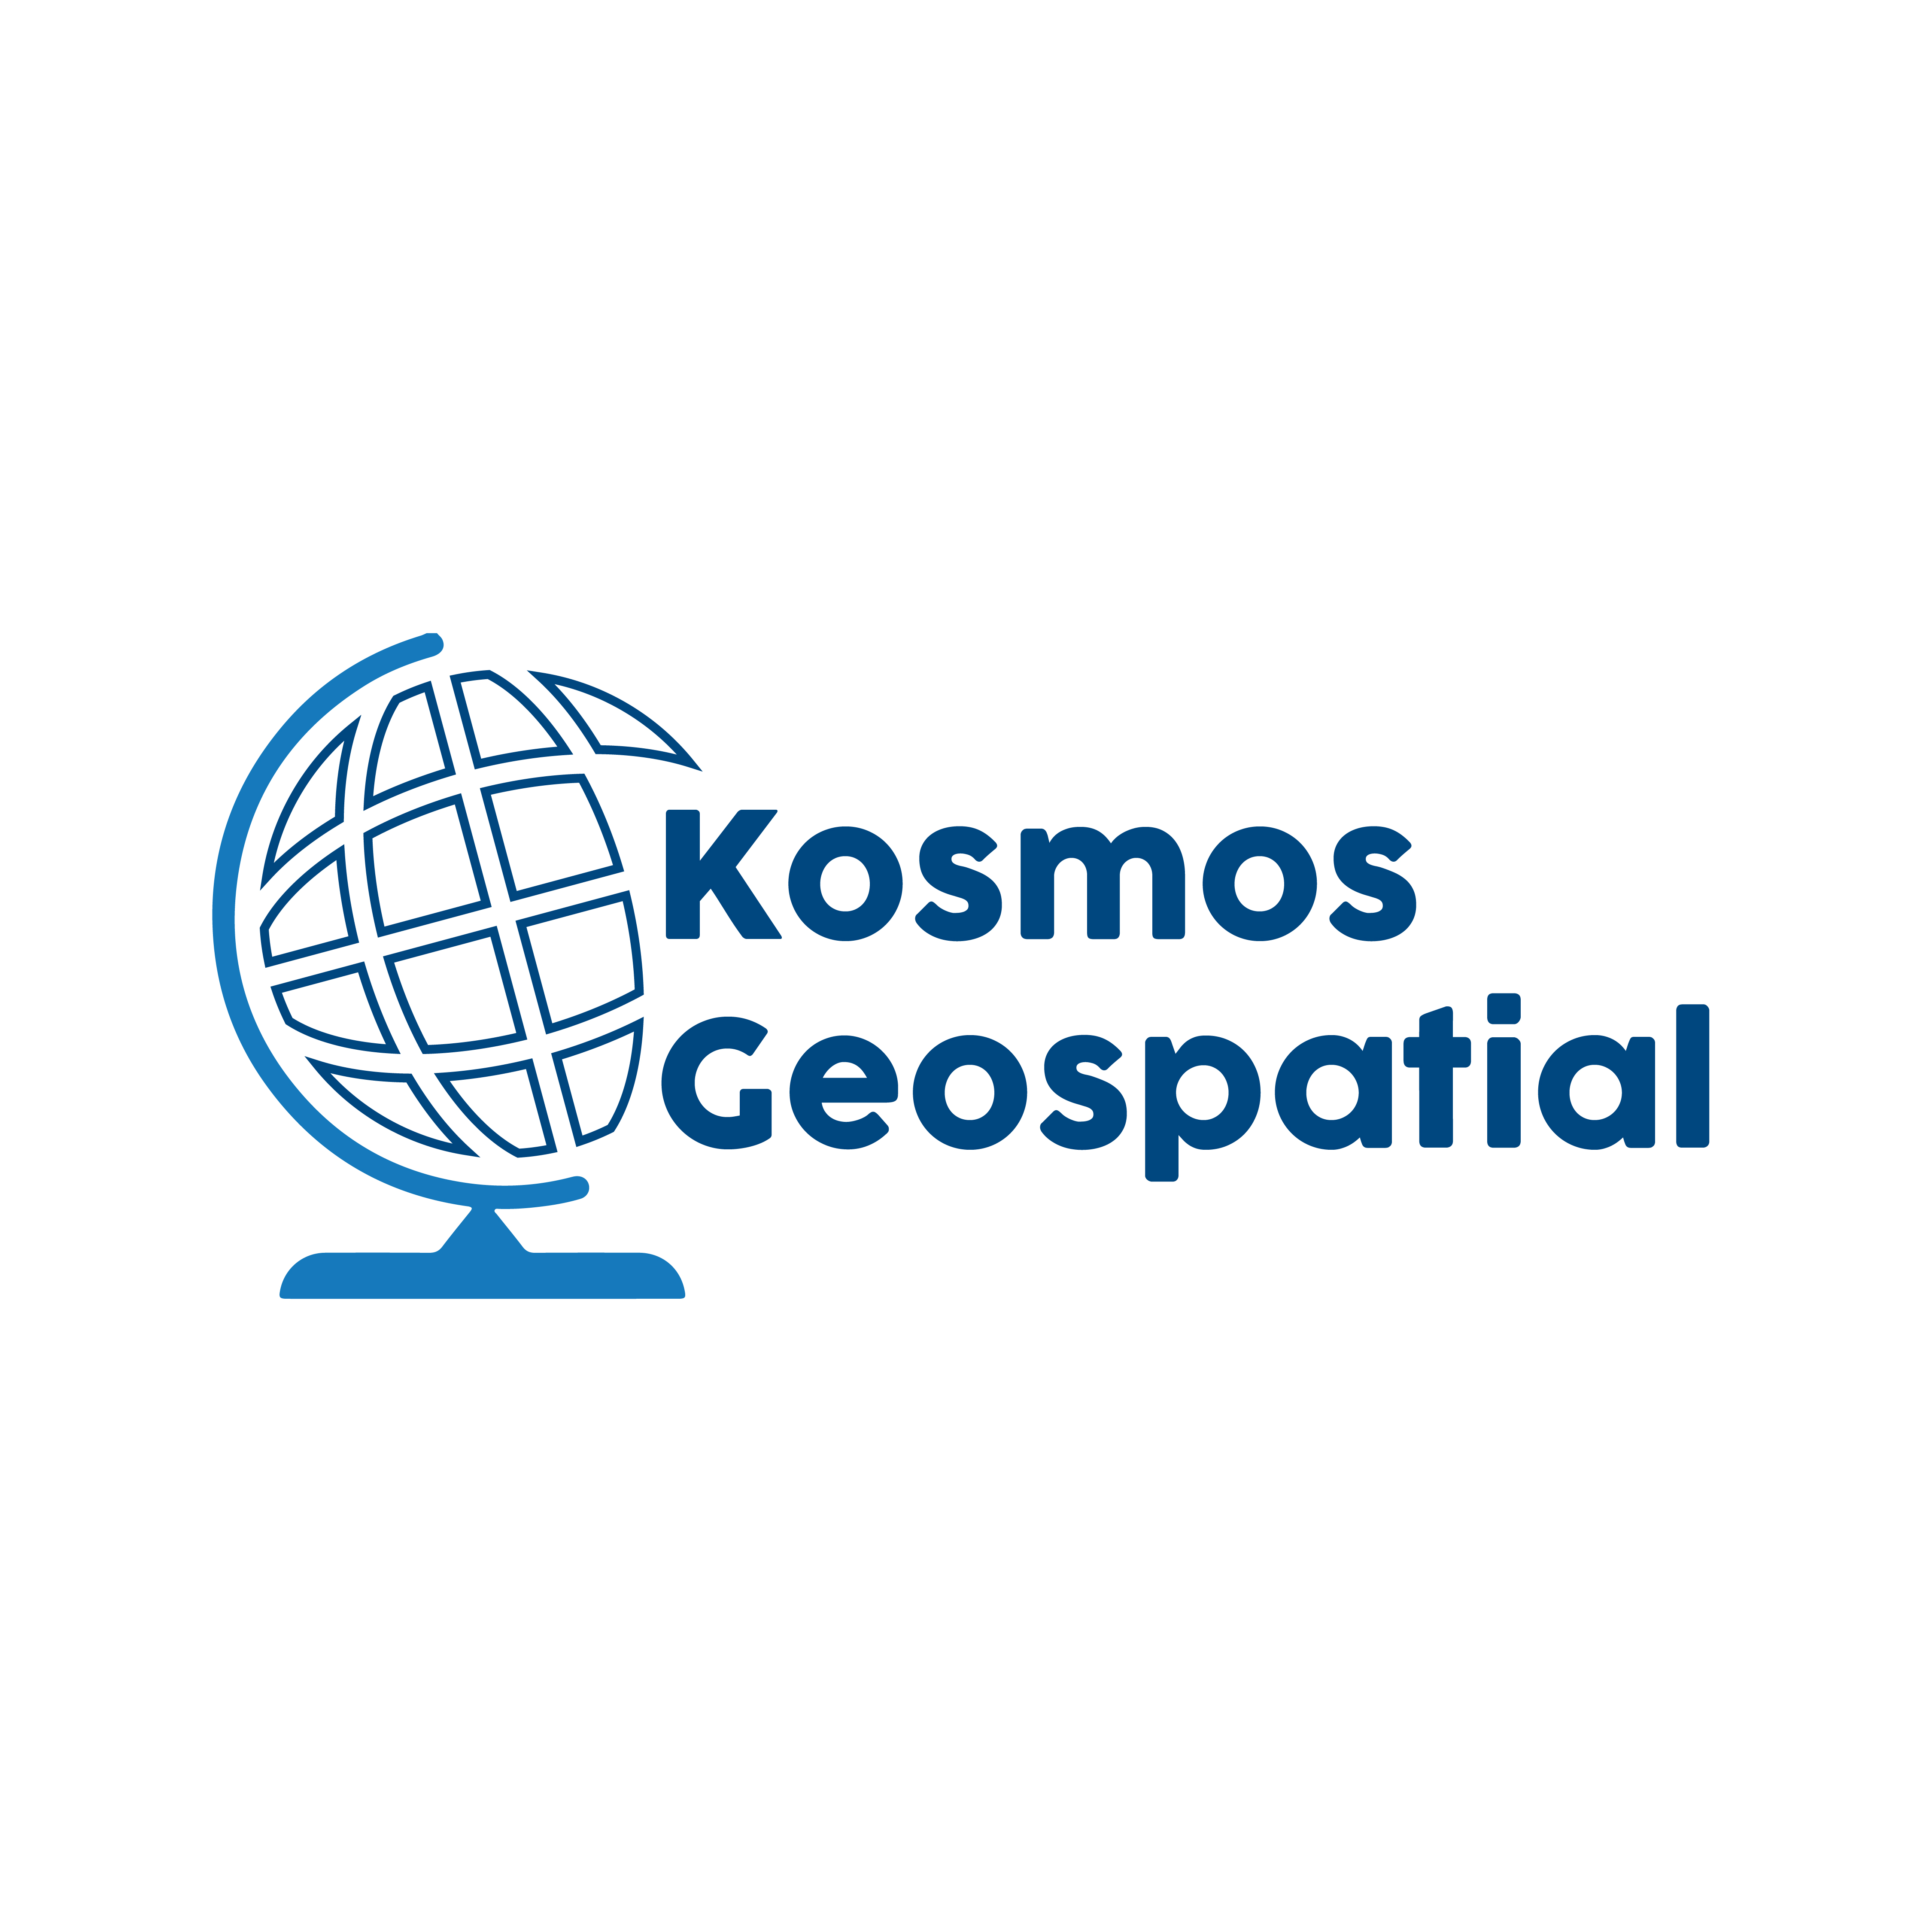 Kosmos Geospatial, LLC